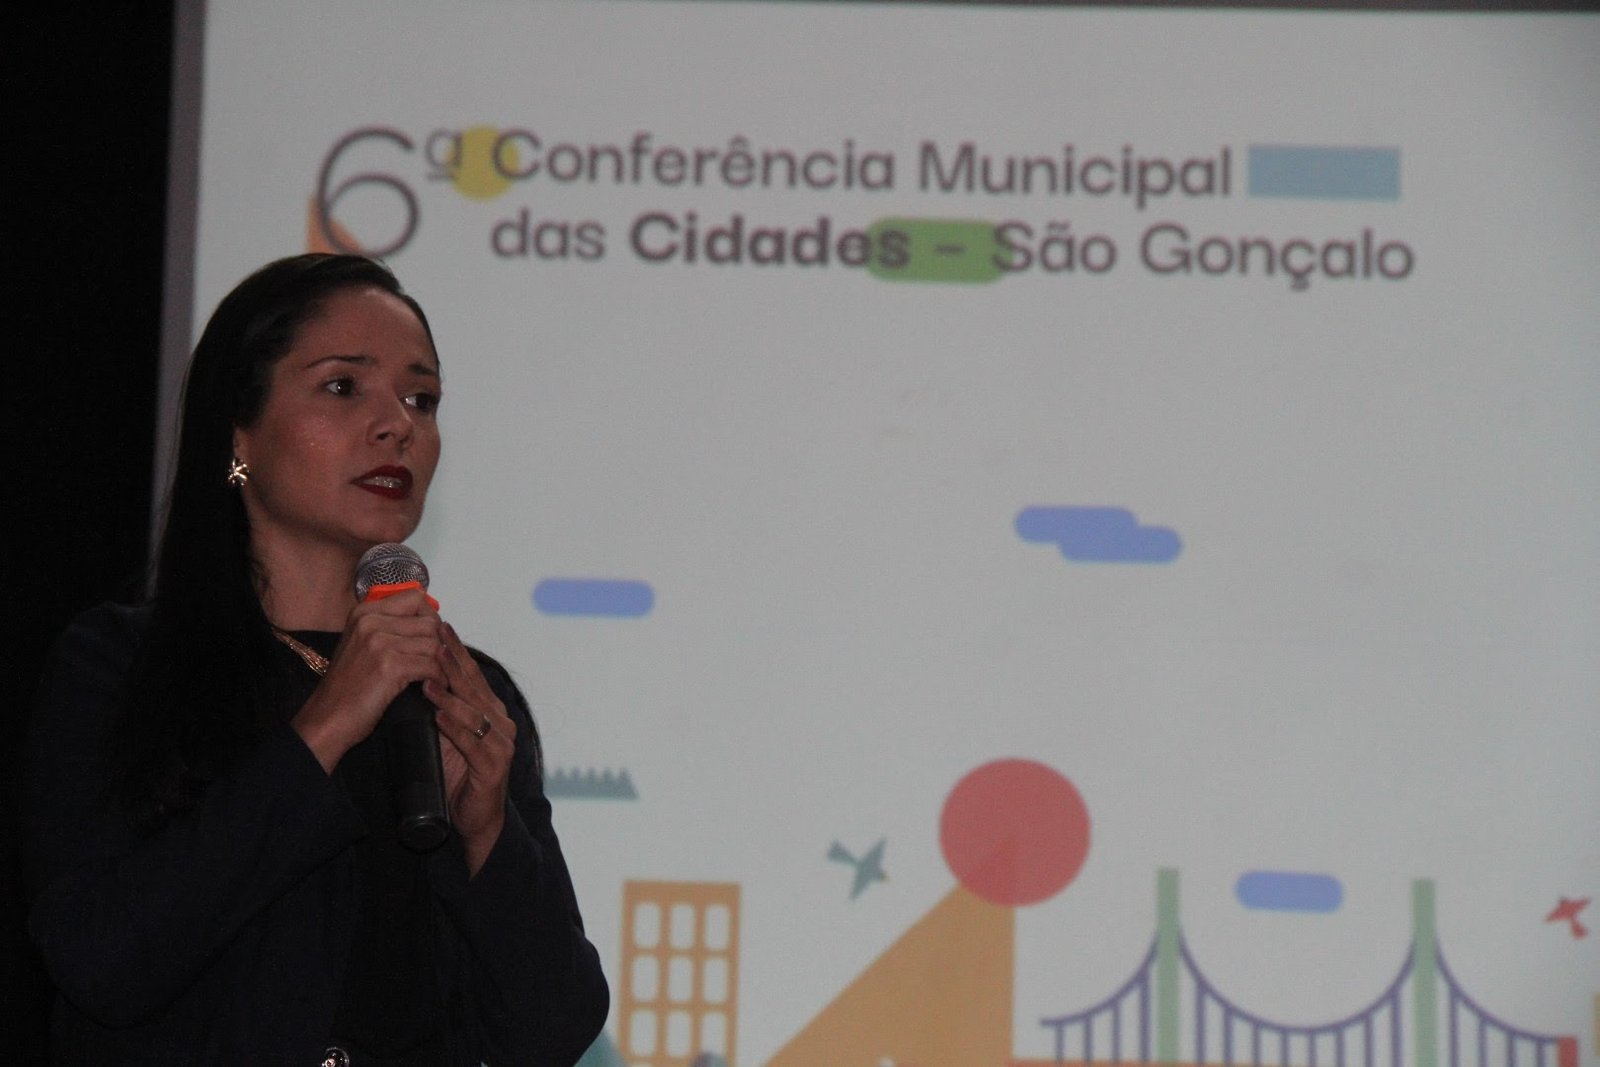 6ª Conferência Municipal das Cidades encerrada na quarta (3) é considerada um sucesso